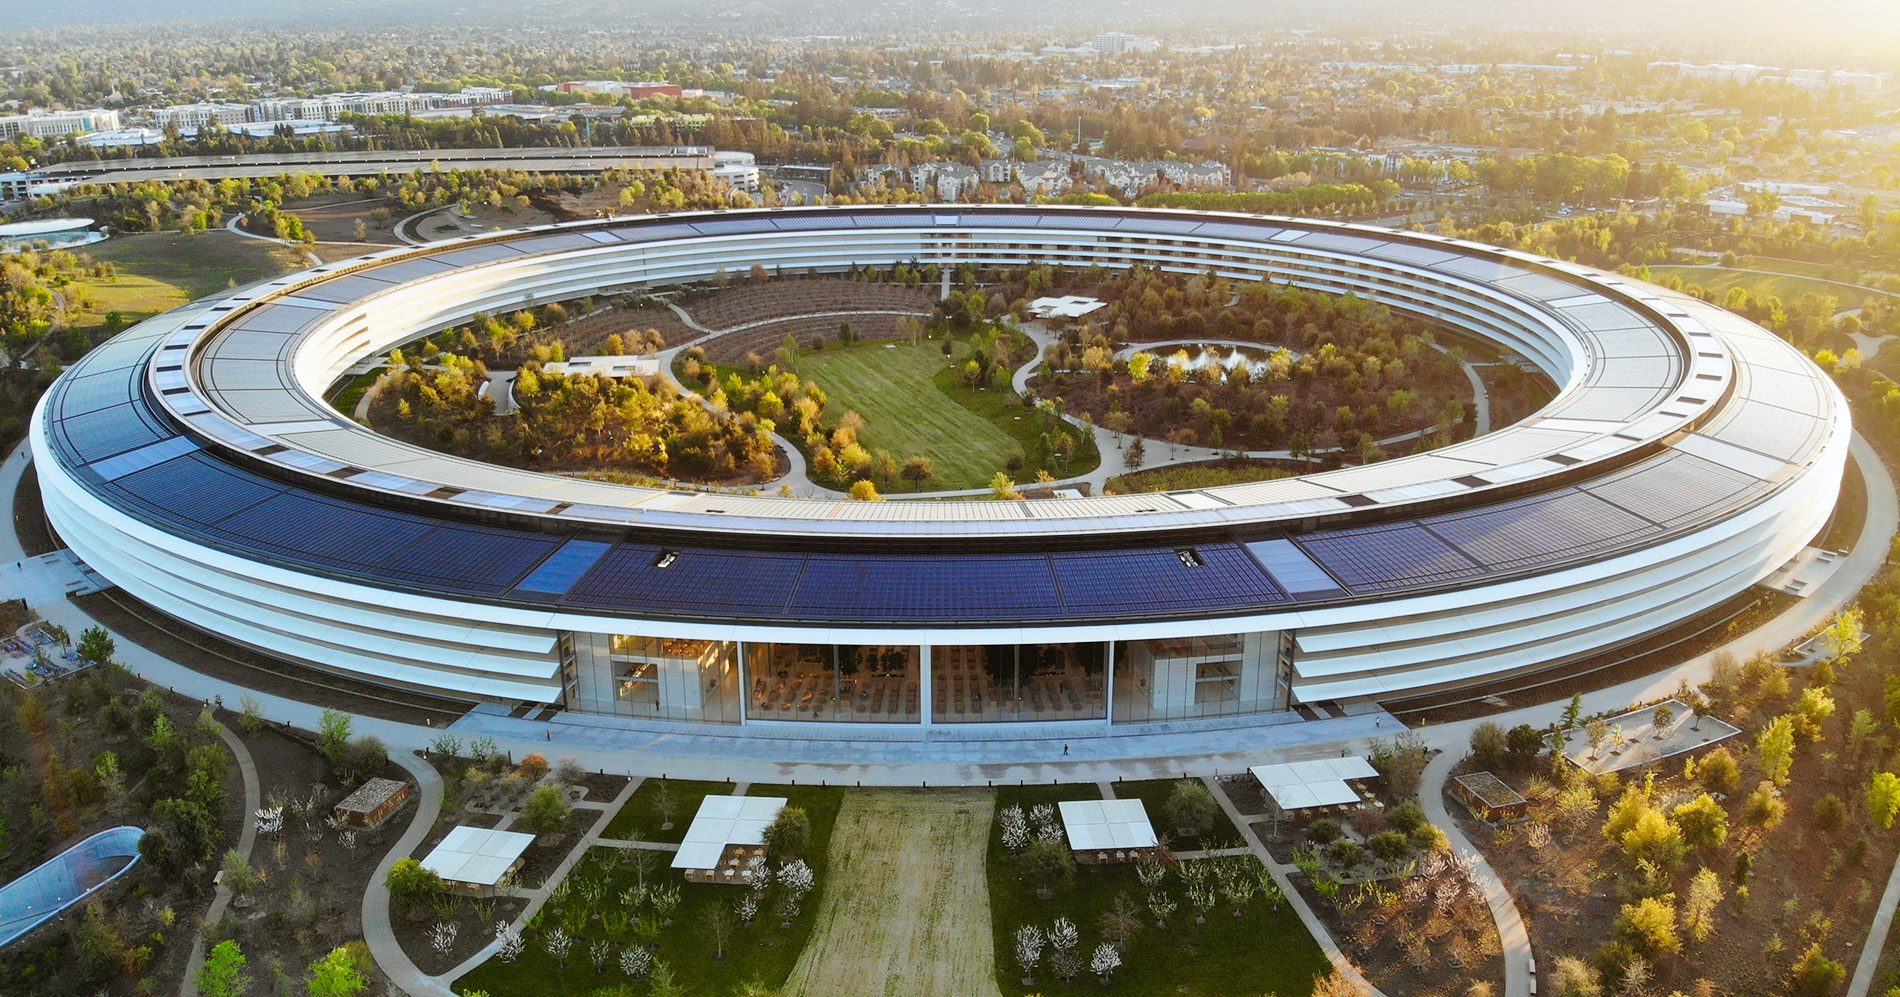 Bei der Planung des Apple Park in Cupertino wurde viel Wert auf die Nutzung nachhaltiger Energien gelegt (Foto: Carles Rabada /Unsplash).